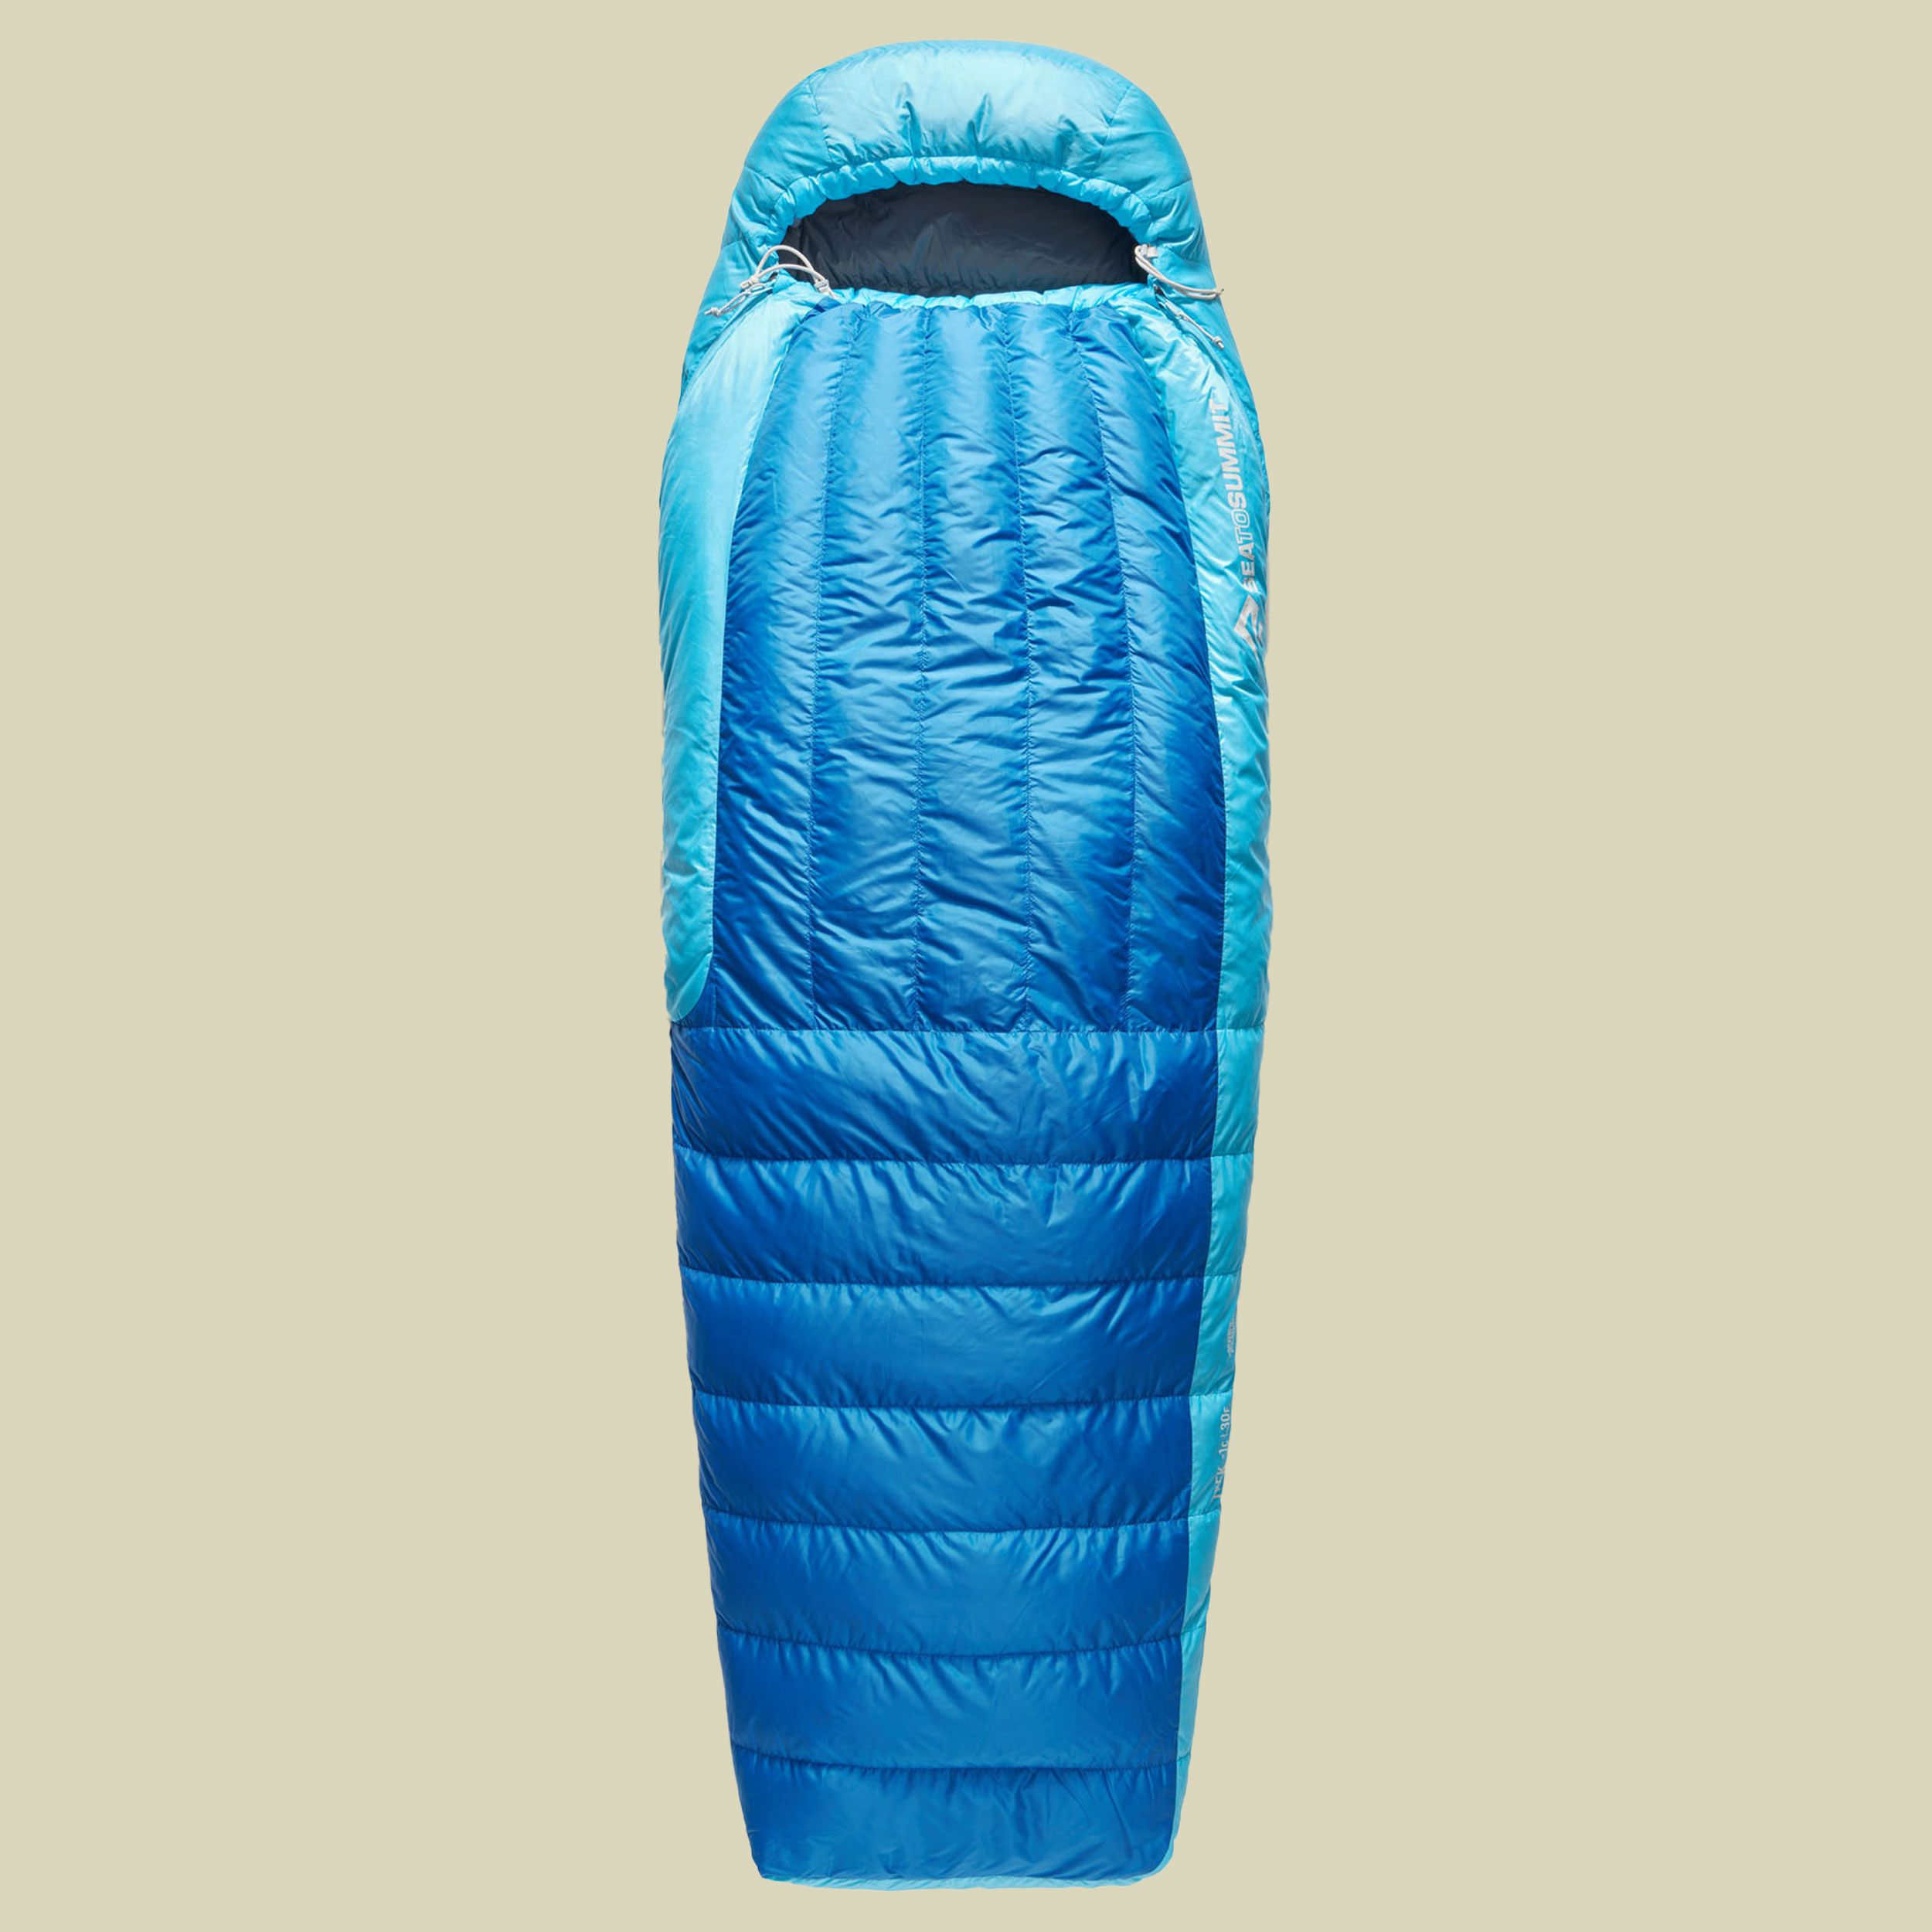 Trek -1C Down Sleeping Bag 198 cm long blau snorkel blue